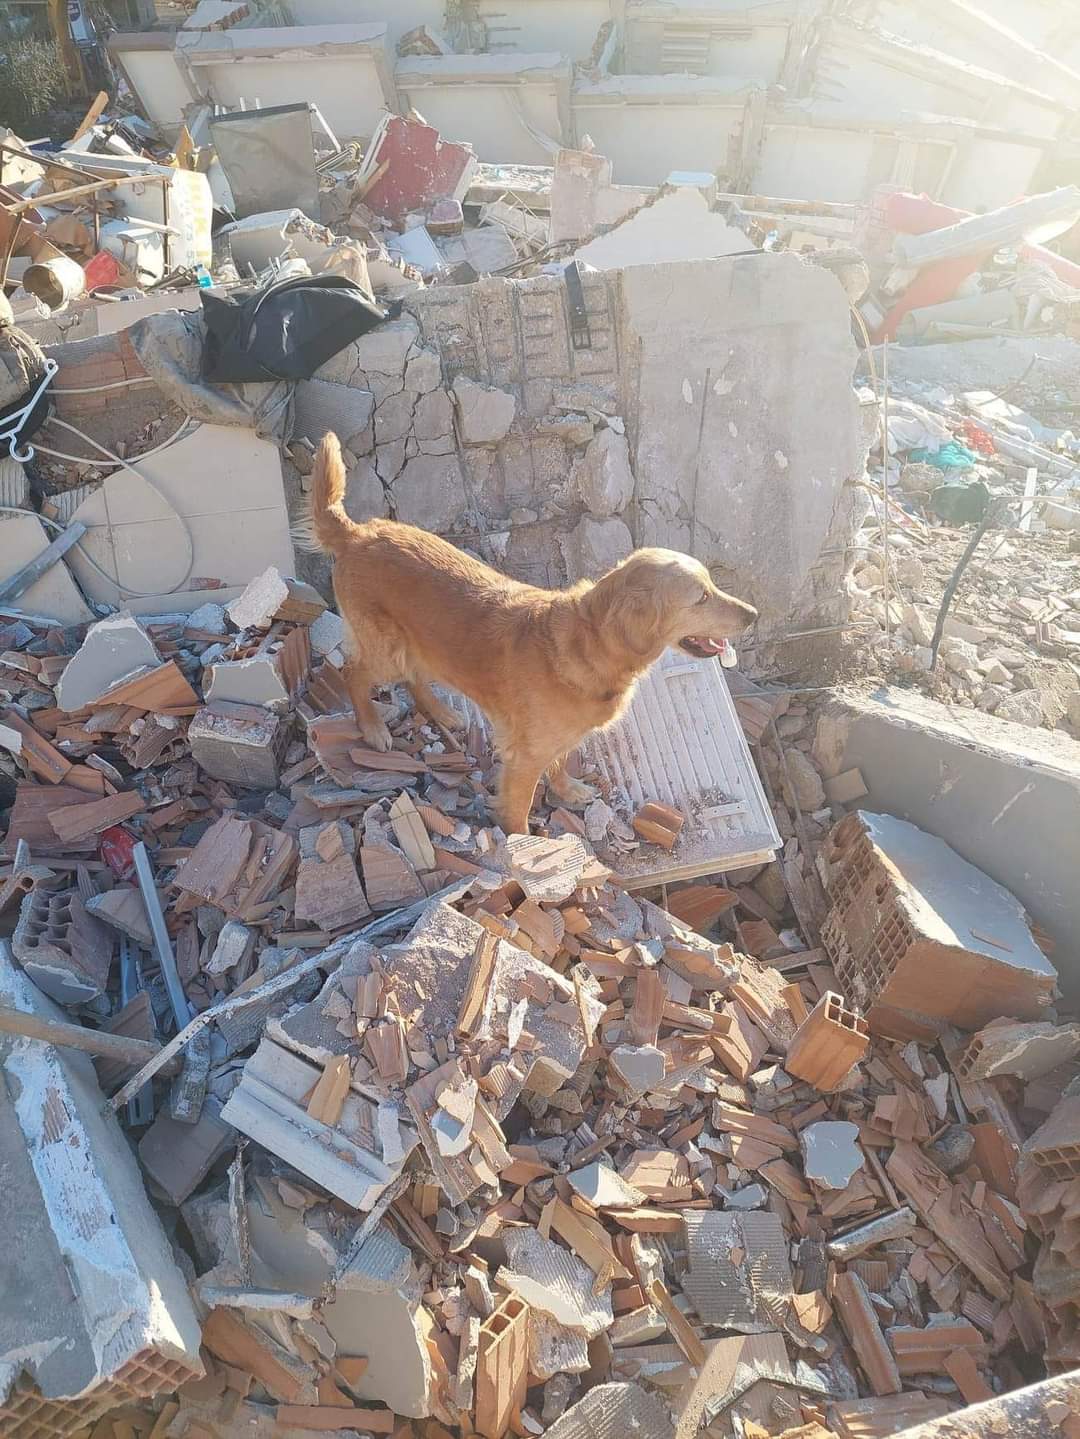 Erdbeben Türkei